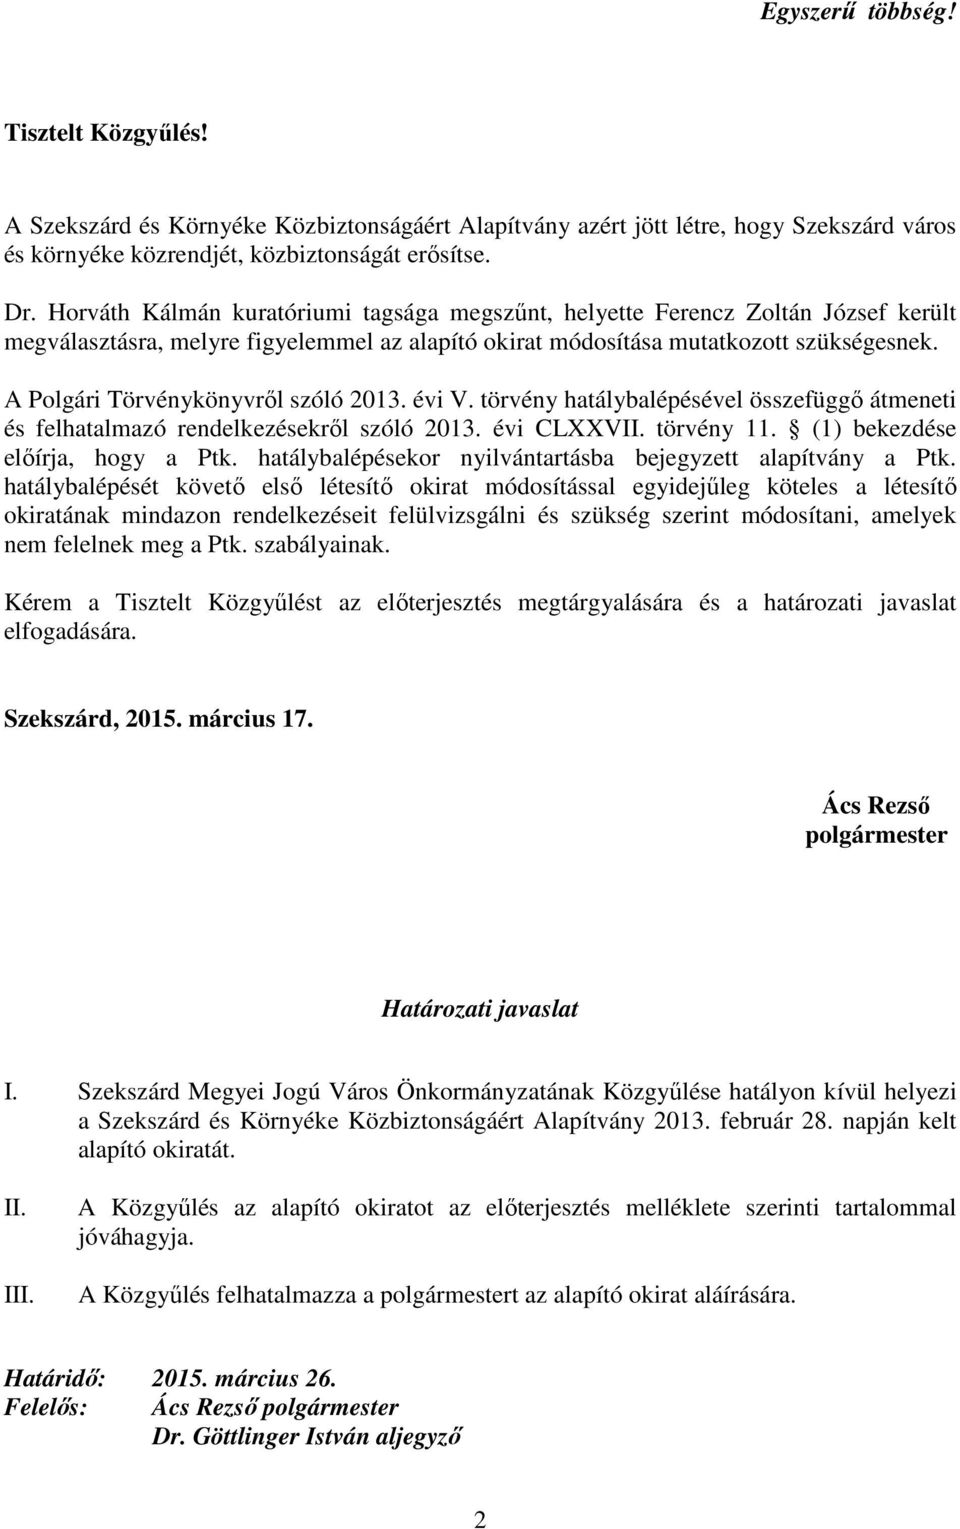 A Polgári Törvénykönyvrıl szóló 2013. évi V. törvény hatálybalépésével összefüggı átmeneti és felhatalmazó rendelkezésekrıl szóló 2013. évi CLXXVII. törvény 11. (1) bekezdése elıírja, hogy a Ptk.